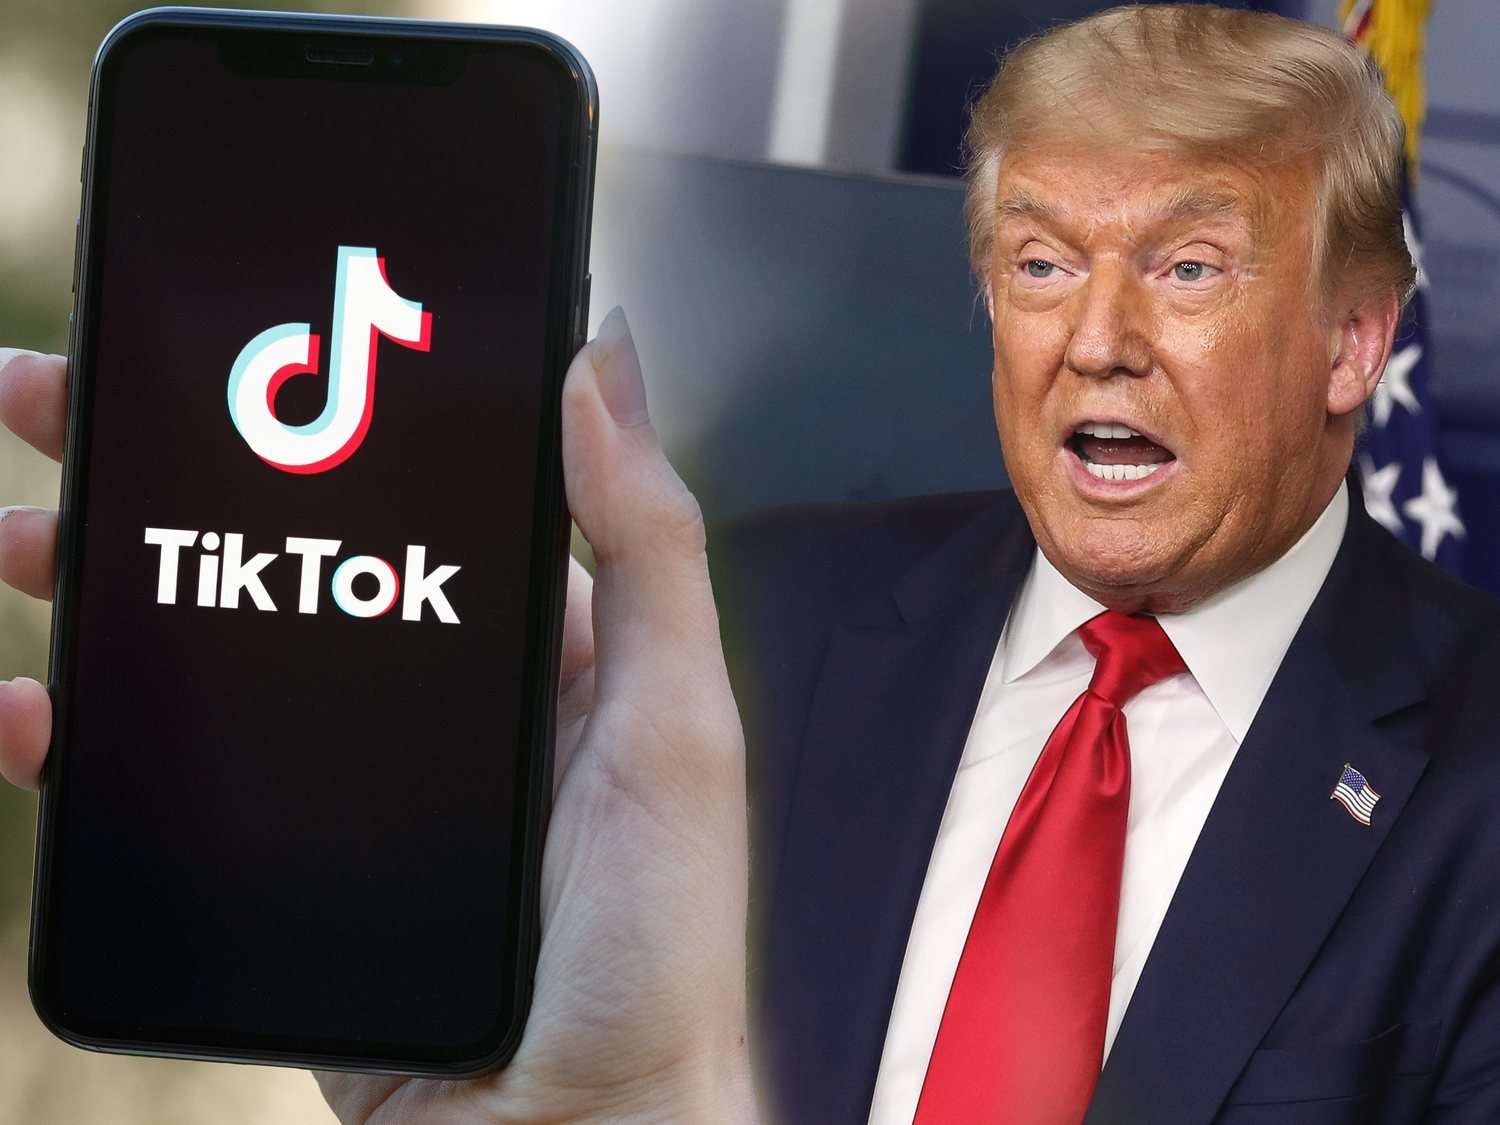 Donald Trump prohibirá TikTok en Estados Unidos por seguridad nacional